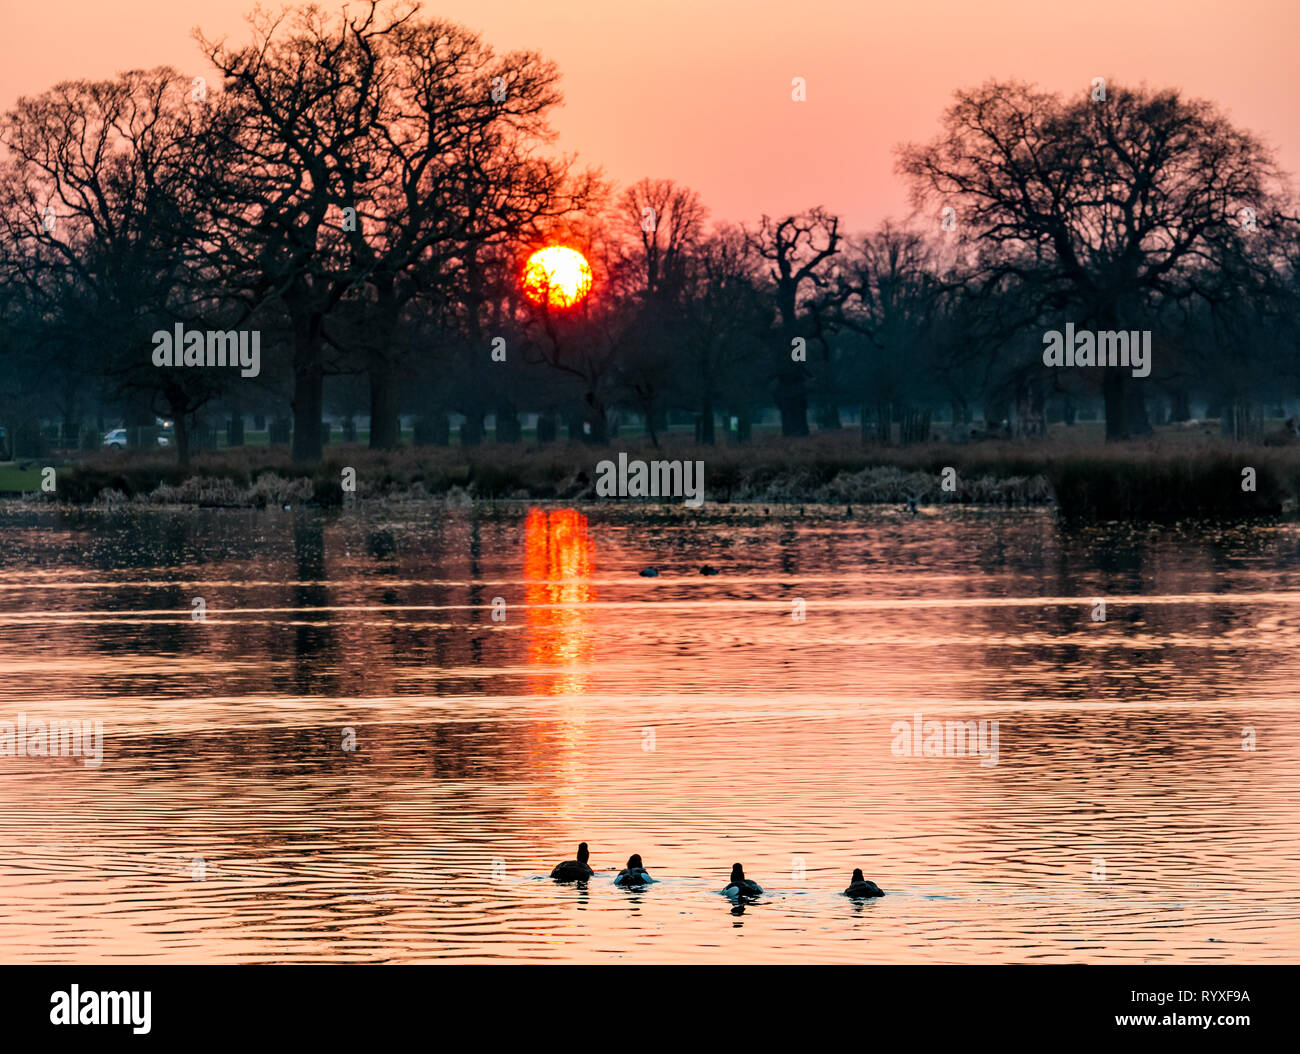 Orange Winter sunset reflected on duck pond, England, UK Stock Photo